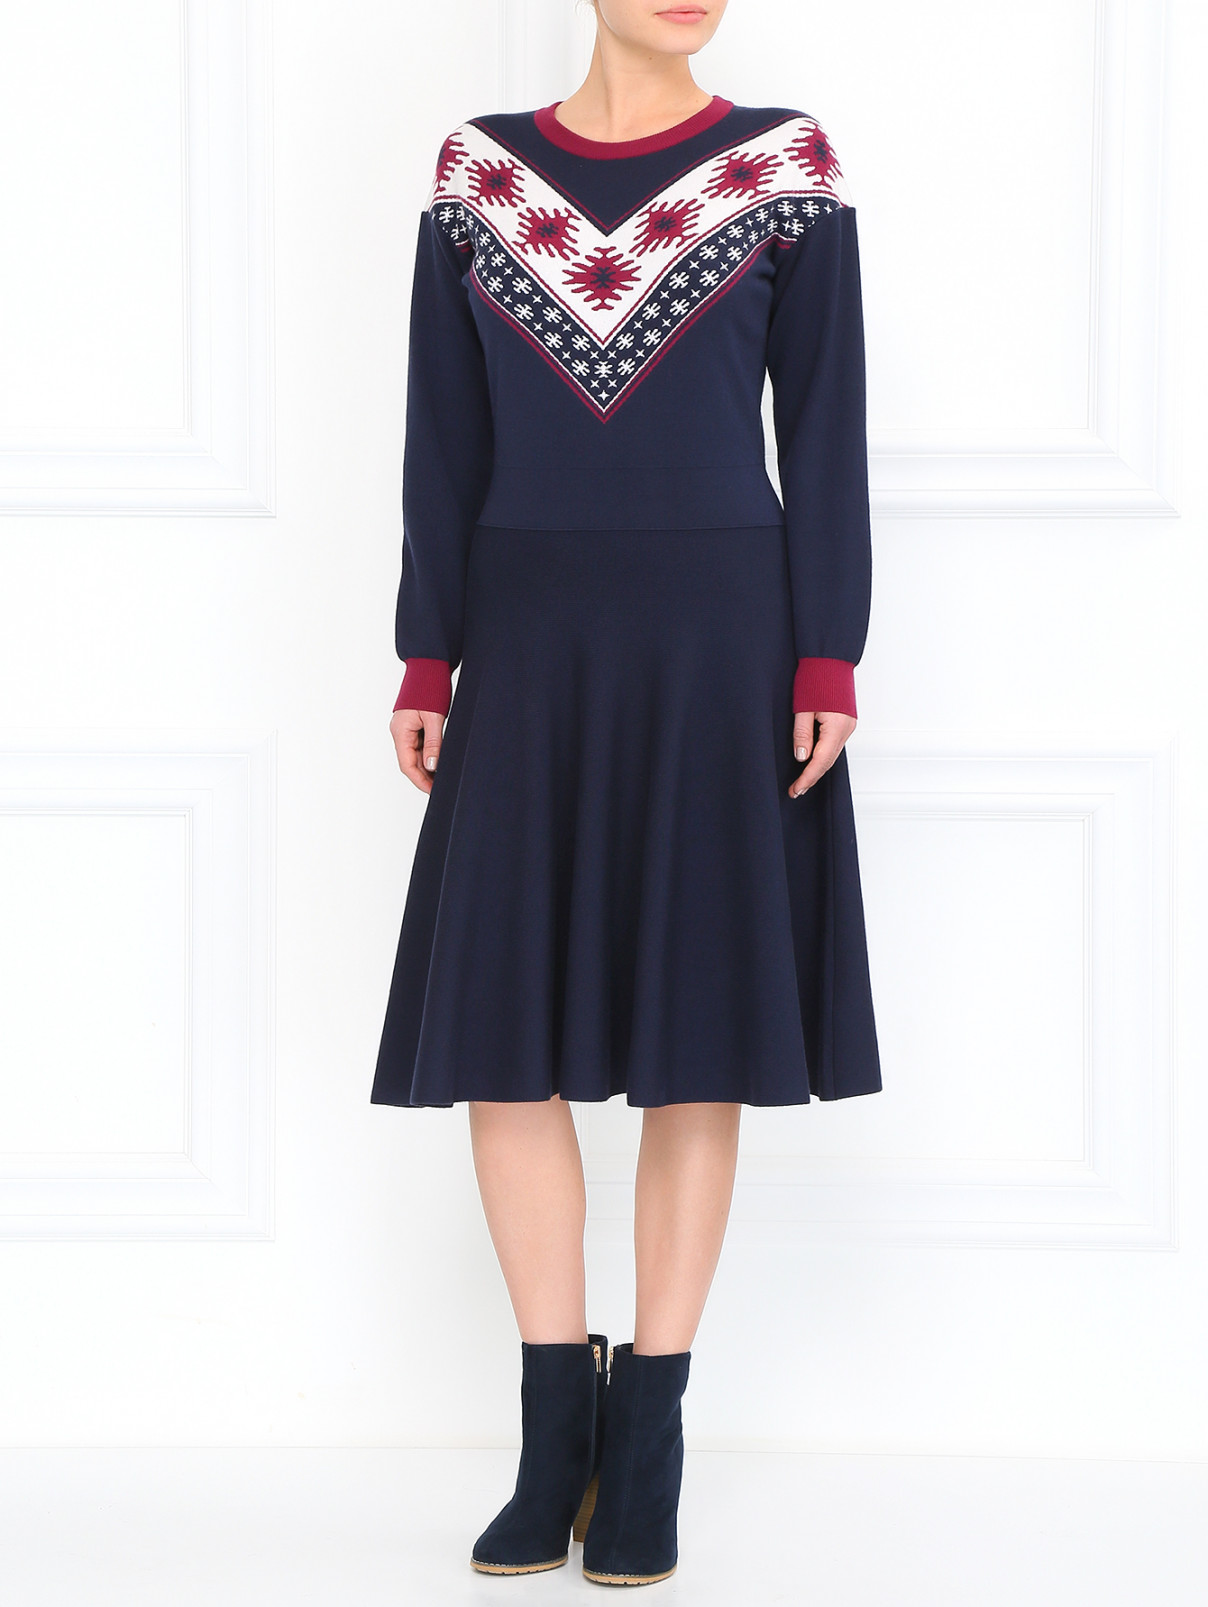 Трикотажное платье с юбкой-солнце BOSCO  –  Модель Общий вид  – Цвет:  Синий